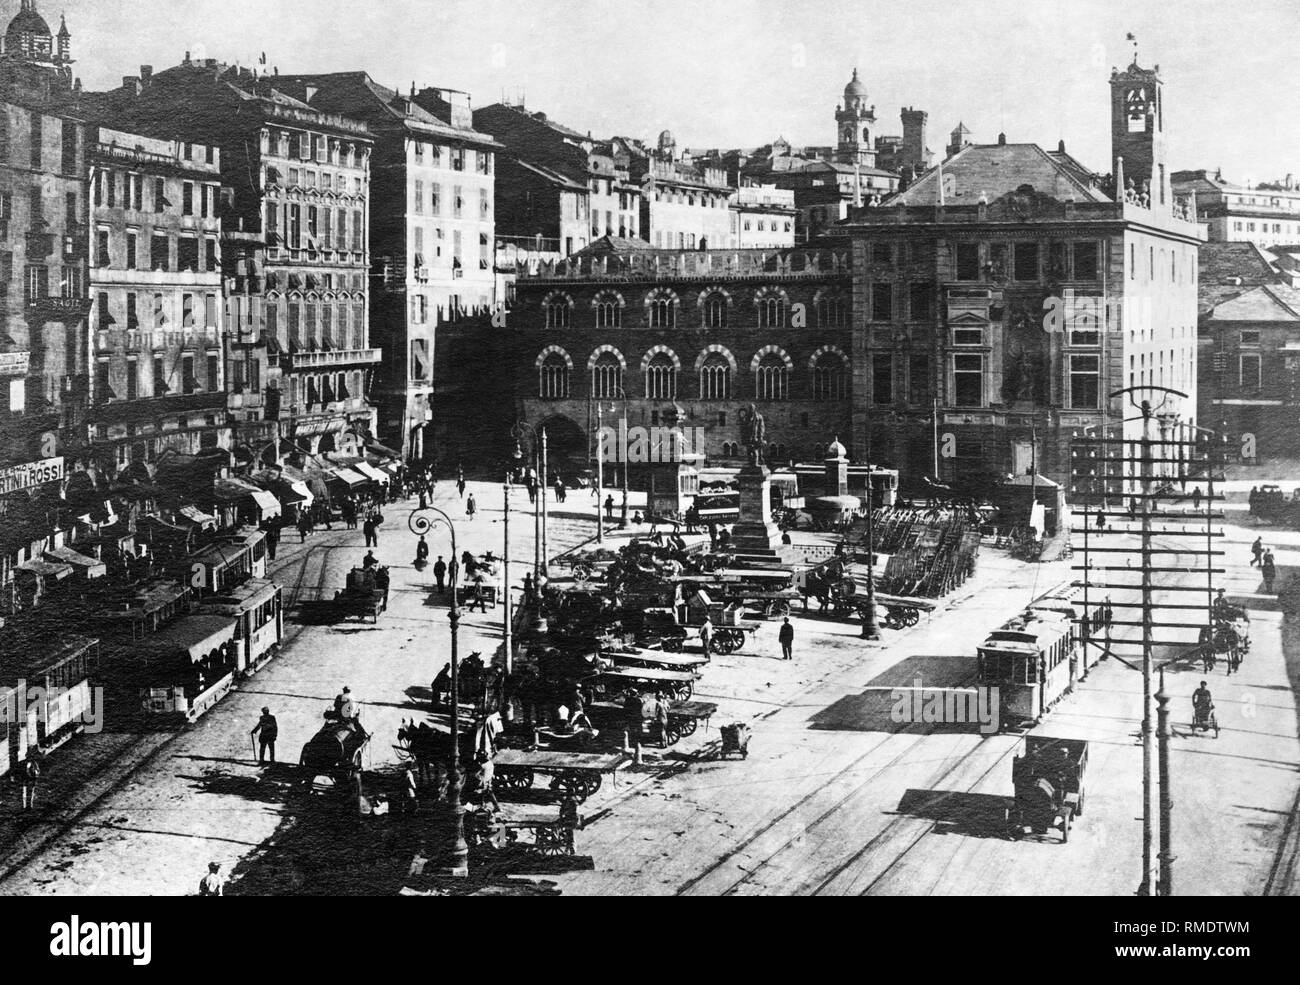 Caricamento Square, Genua, Ligurien, Italien, 1920 Stockfoto